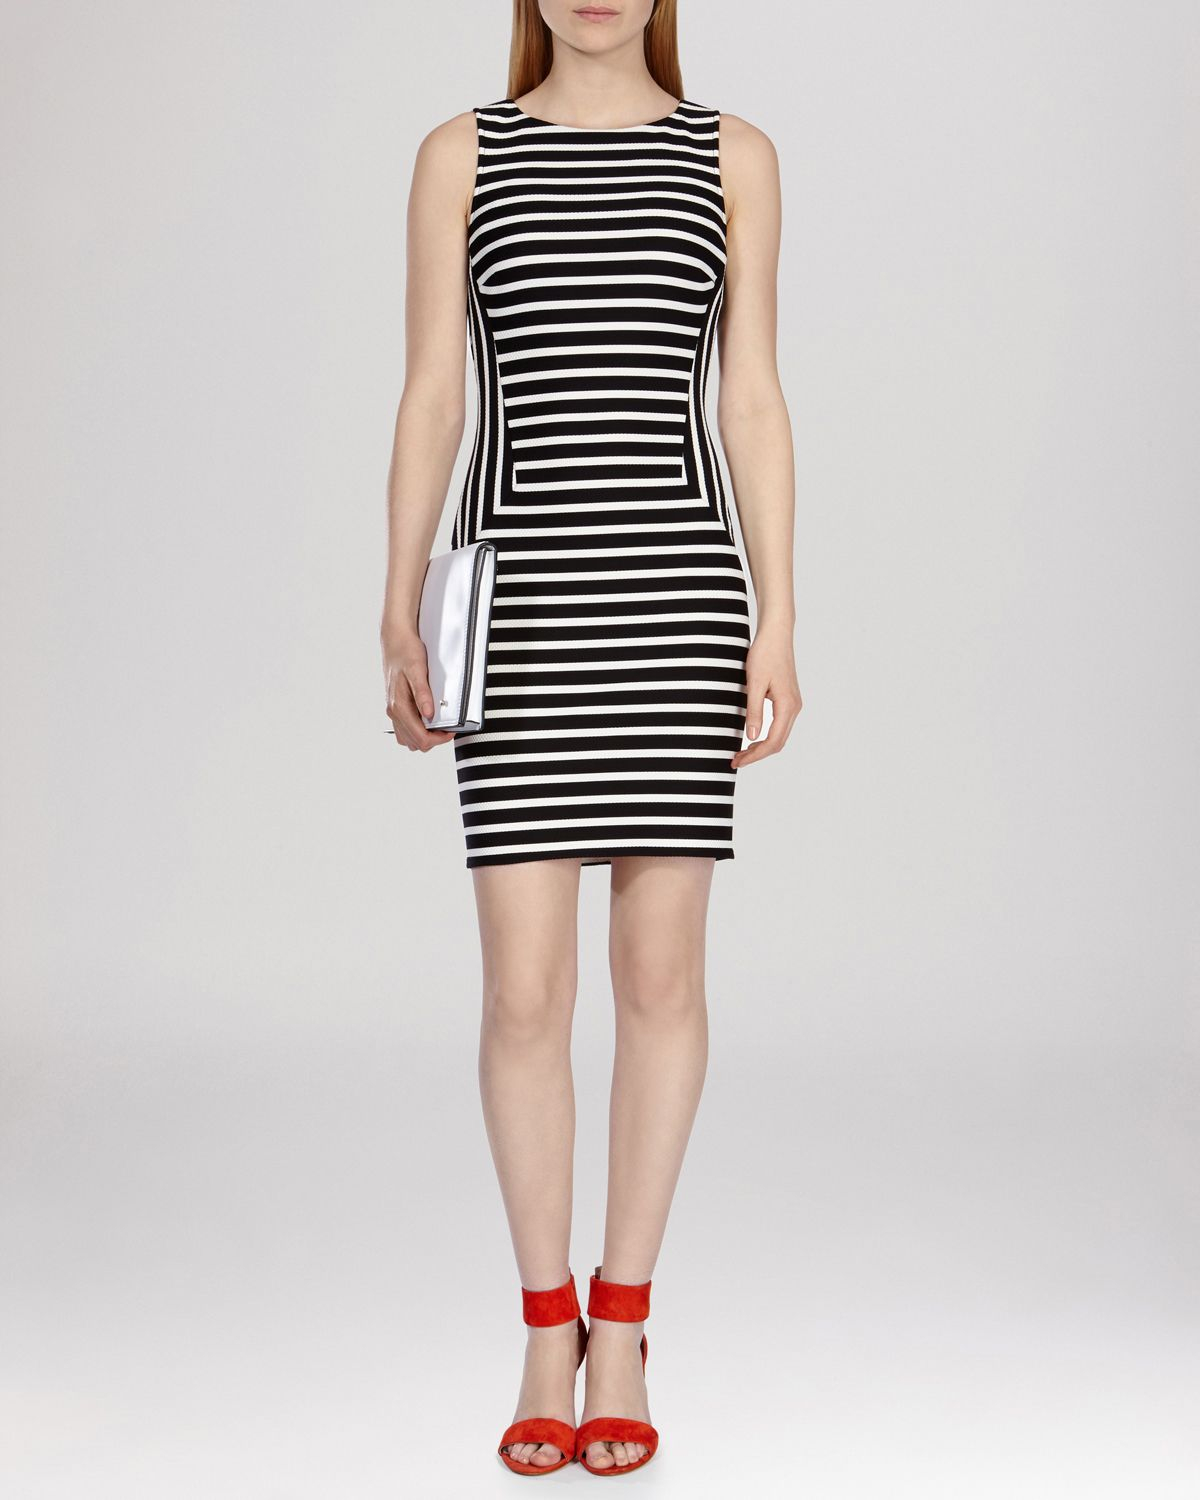 Karen Millen Dress - Striped Jersey 